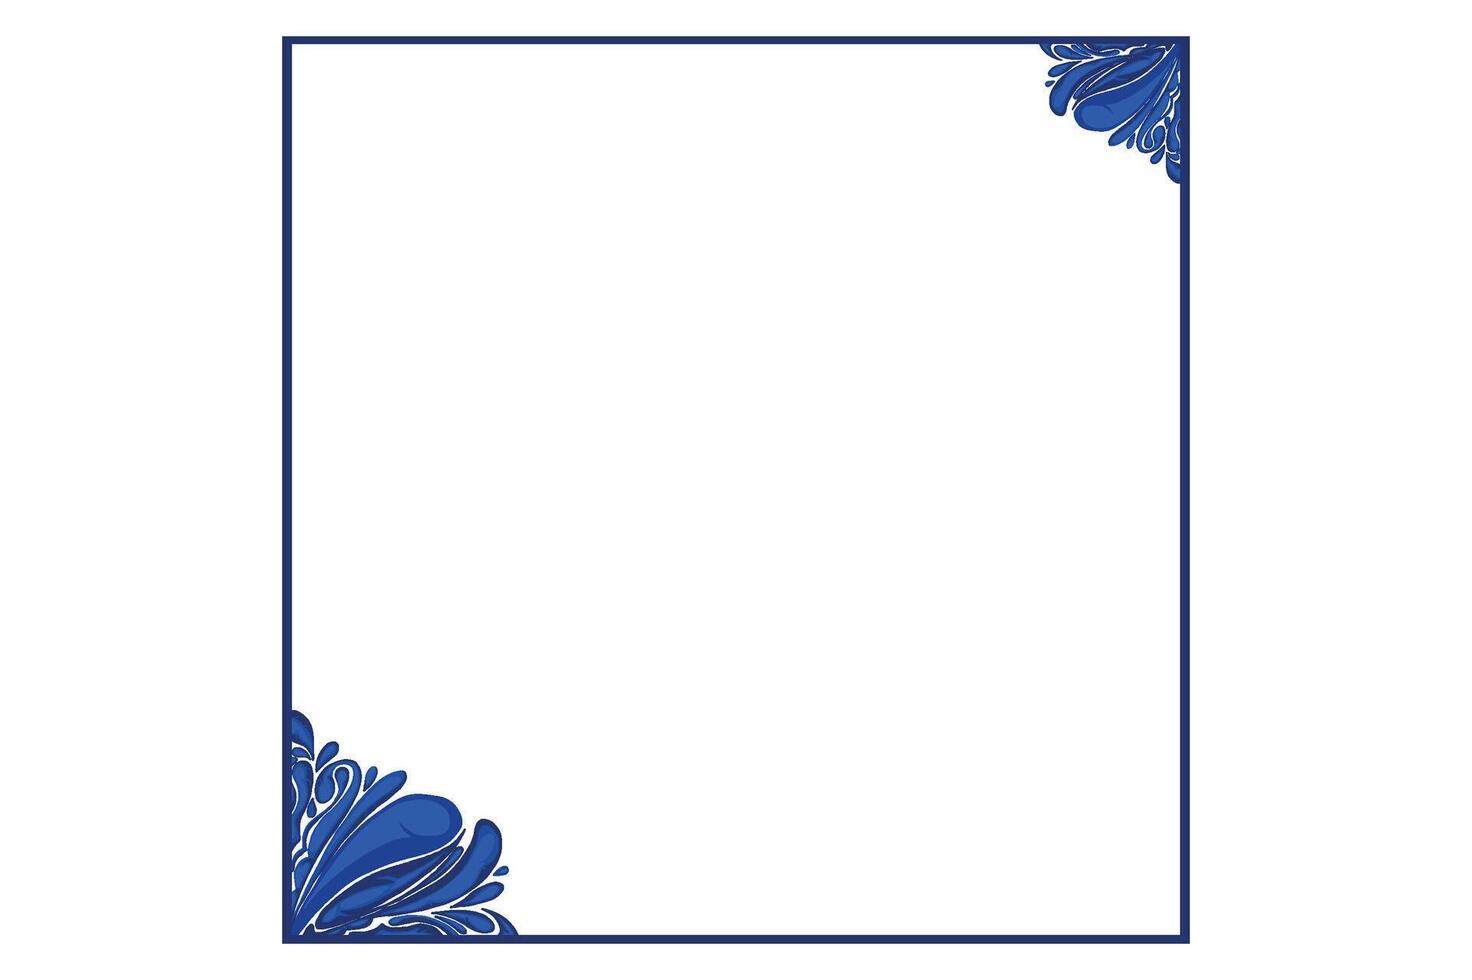 blauw ornament kader grens vector ontwerp voor decoratief element